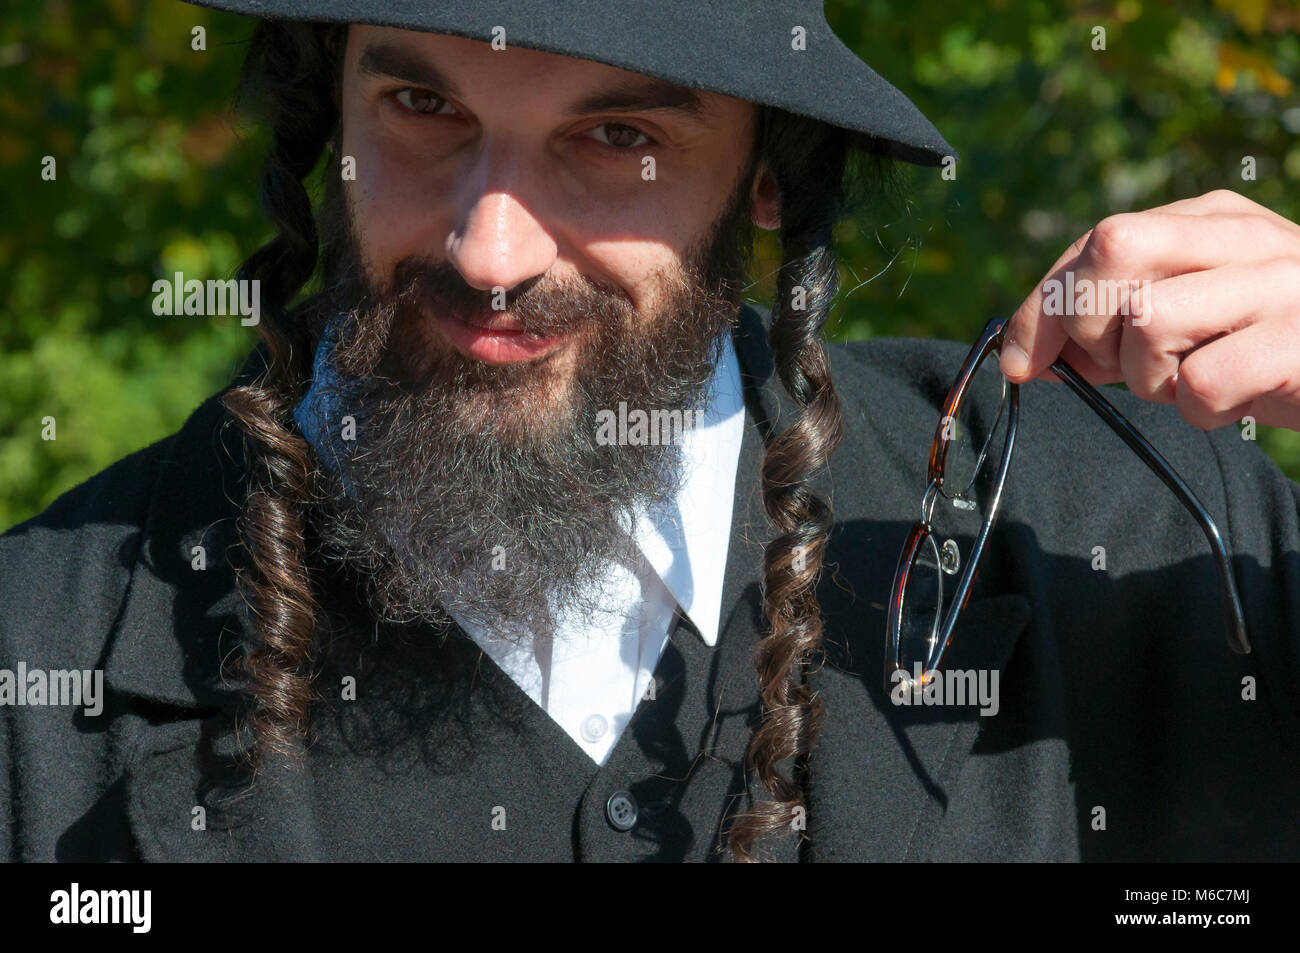 Außenbereich sonnige helle Porträt eines lächelnden Jungen orthodoxen jüdischen Mann mit schwarzen Bart, Hut und Kostüm holding Brillen Stockfoto